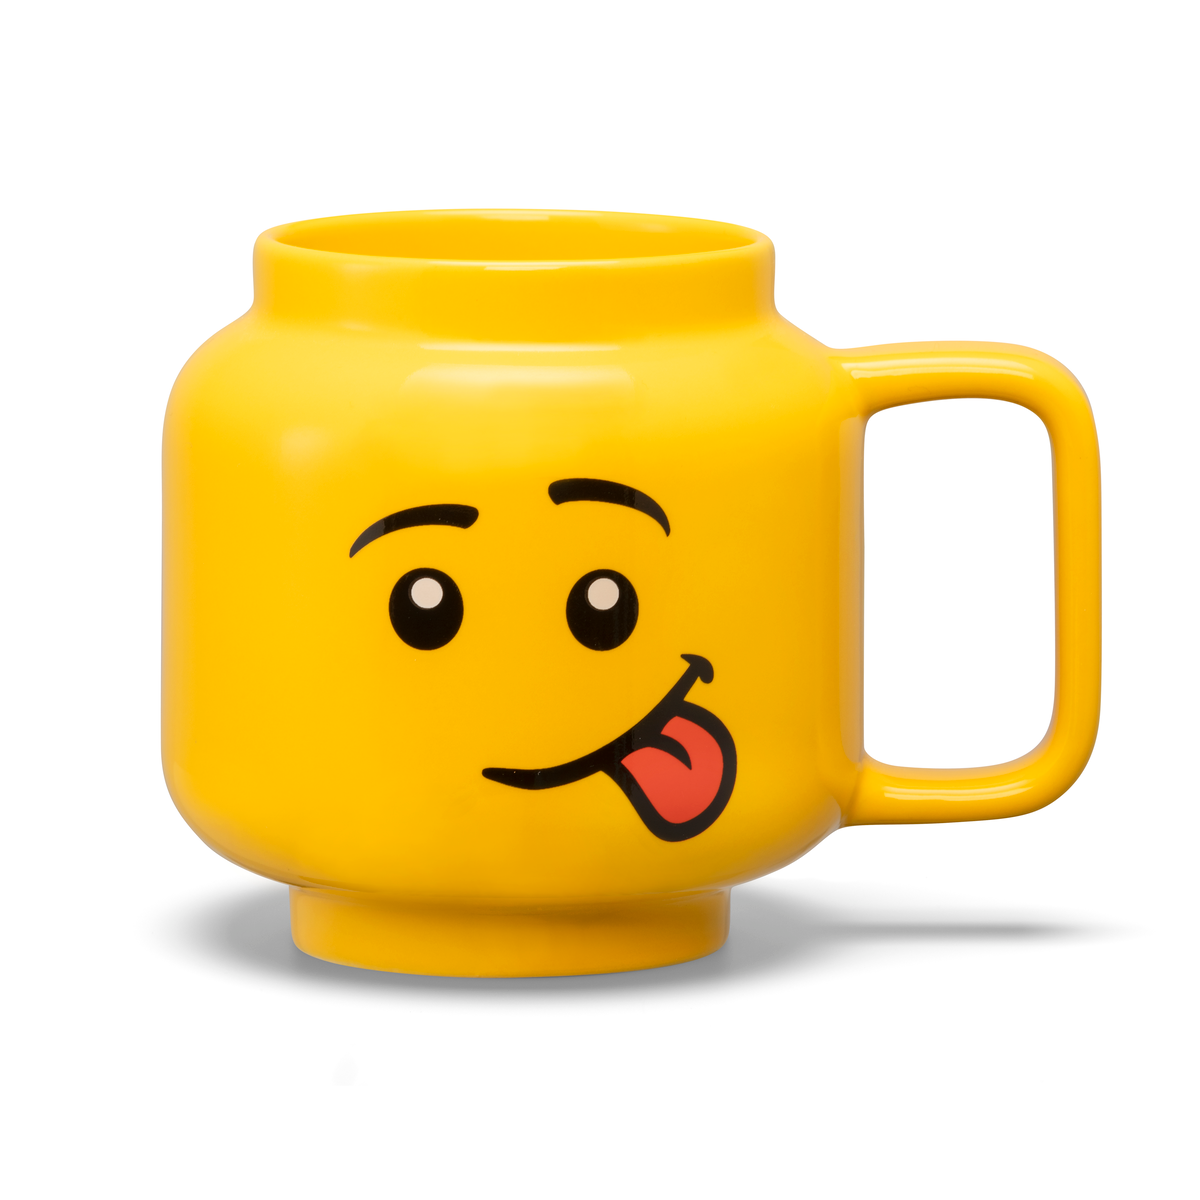 LEGO - Taza de Ceramica Grande Original, Color Amarillo, 530 mL